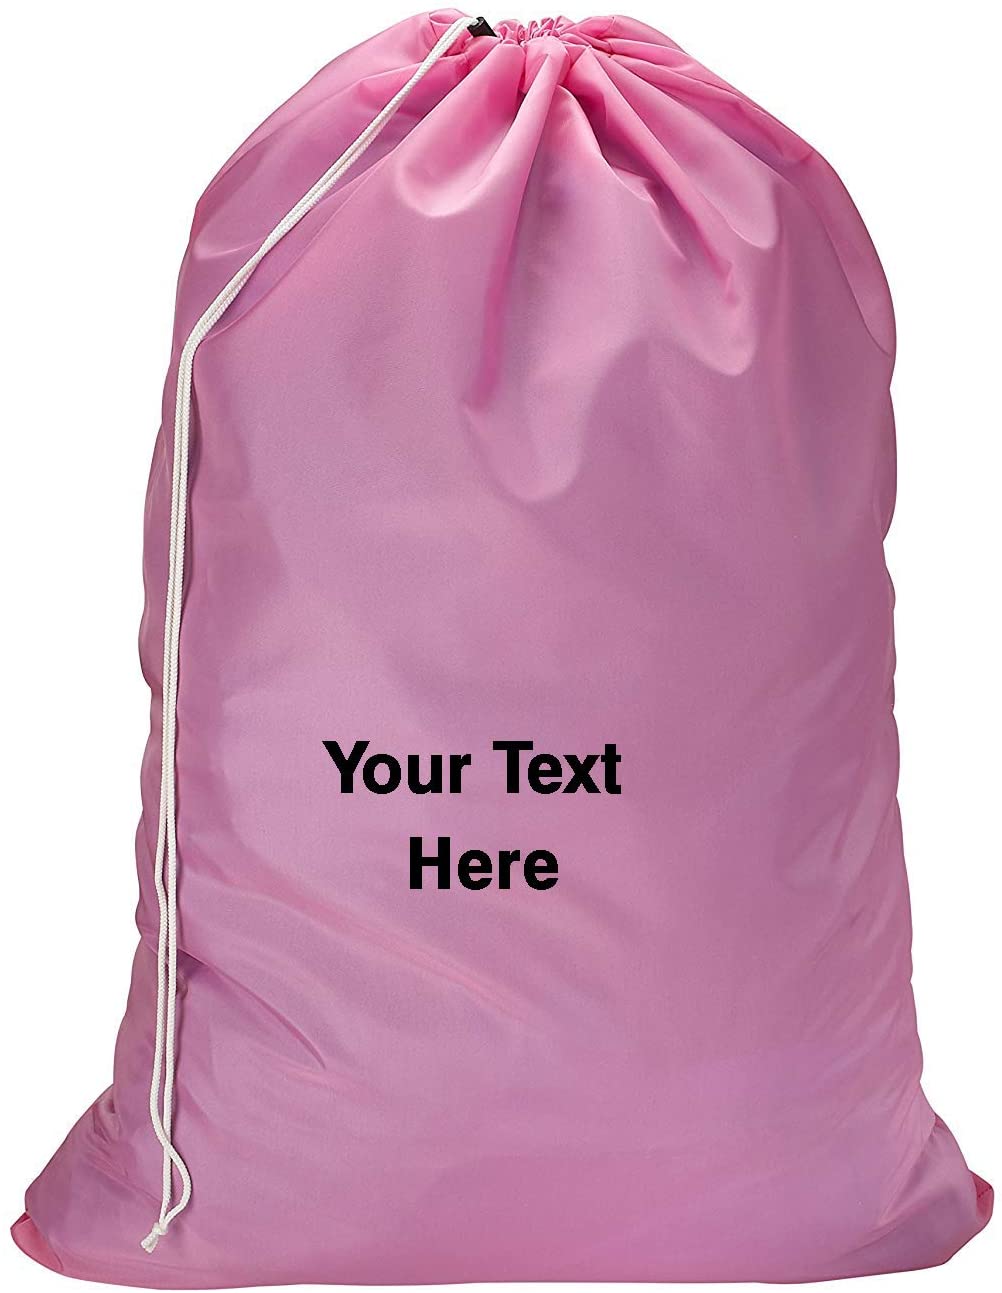 Personalized Nylon Laundry Bag - Locking Drawstring Closure and Machine Washable Pink